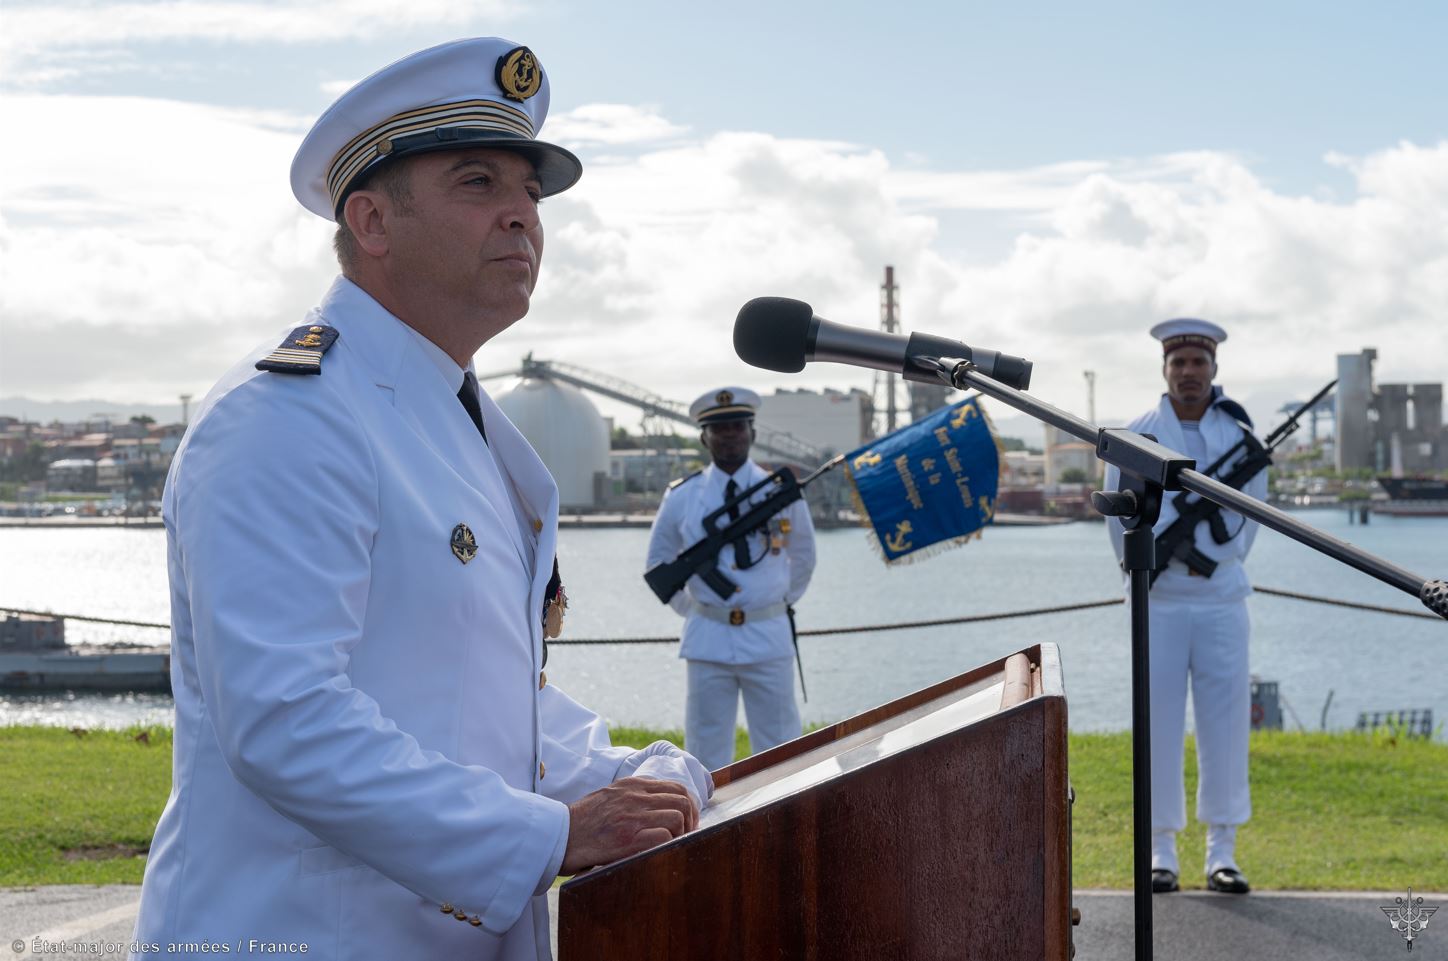     La base navale de Fort-de-France a un nouveau commandant

